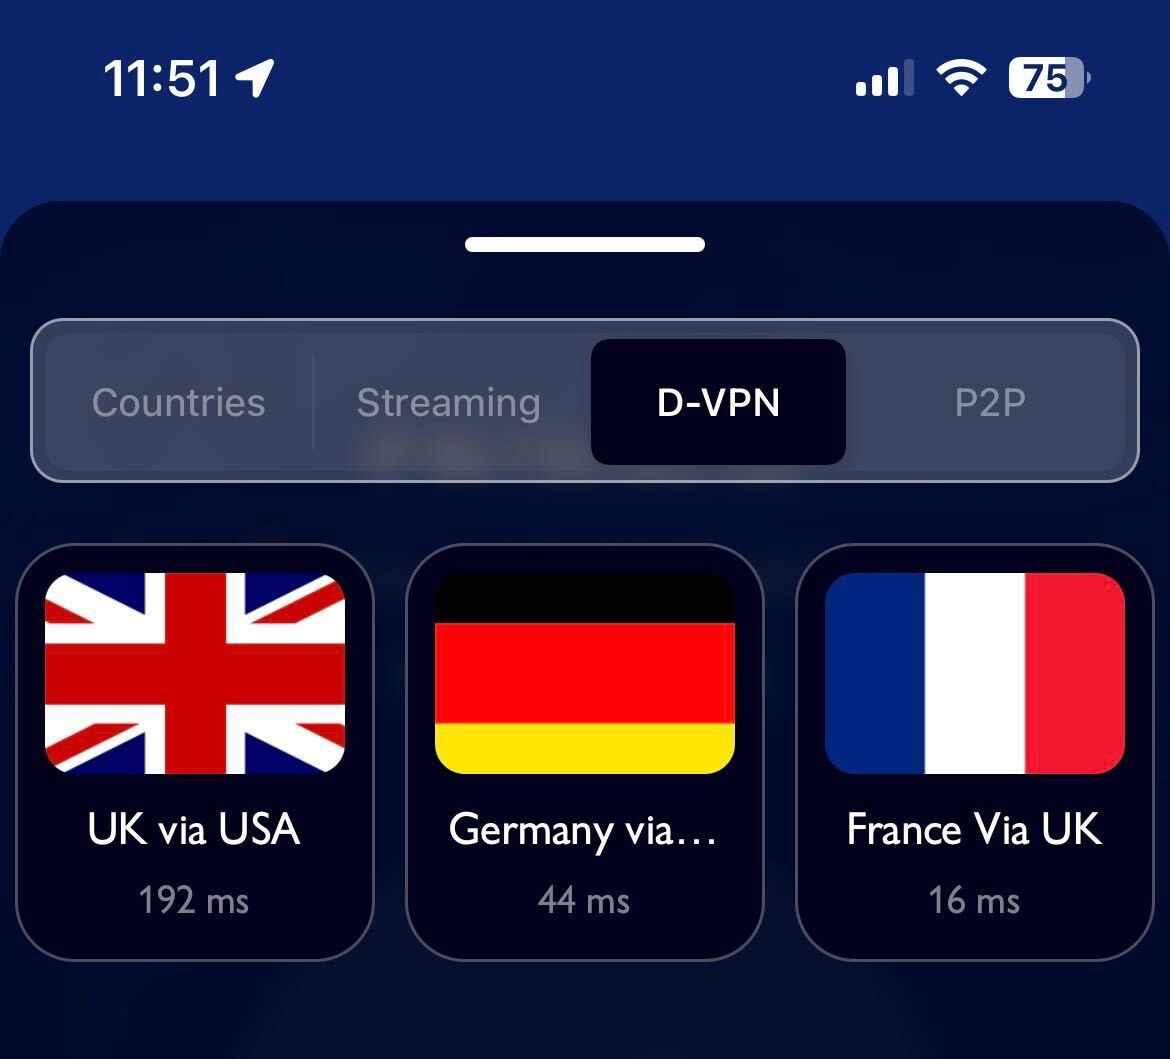 Servidores VPN más rápidos (D-VPN iPhone)